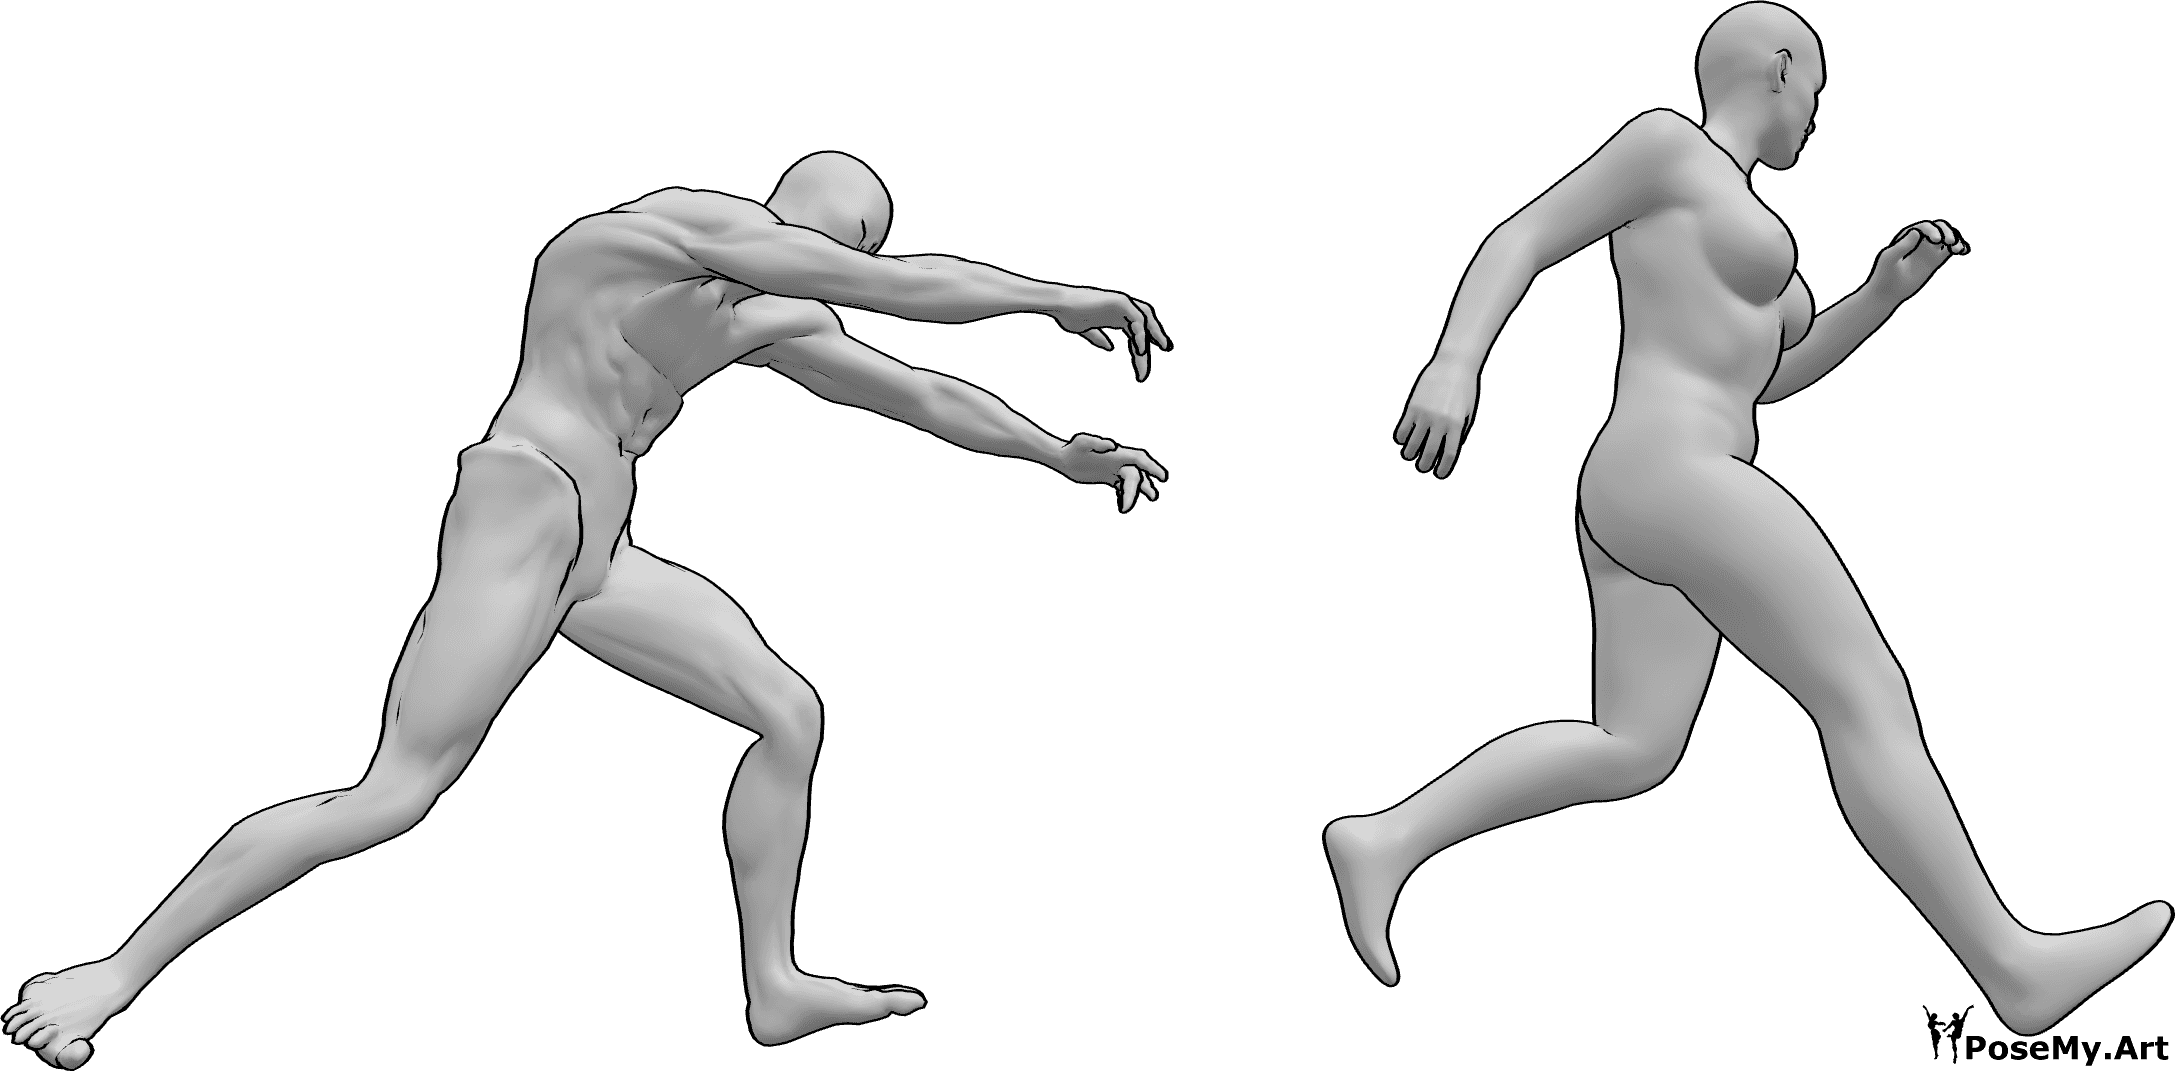 Posen-Referenz- Zombie jagt weibliche Pose - Zombie jagt eine Frau, die versucht, vor ihm wegzulaufen